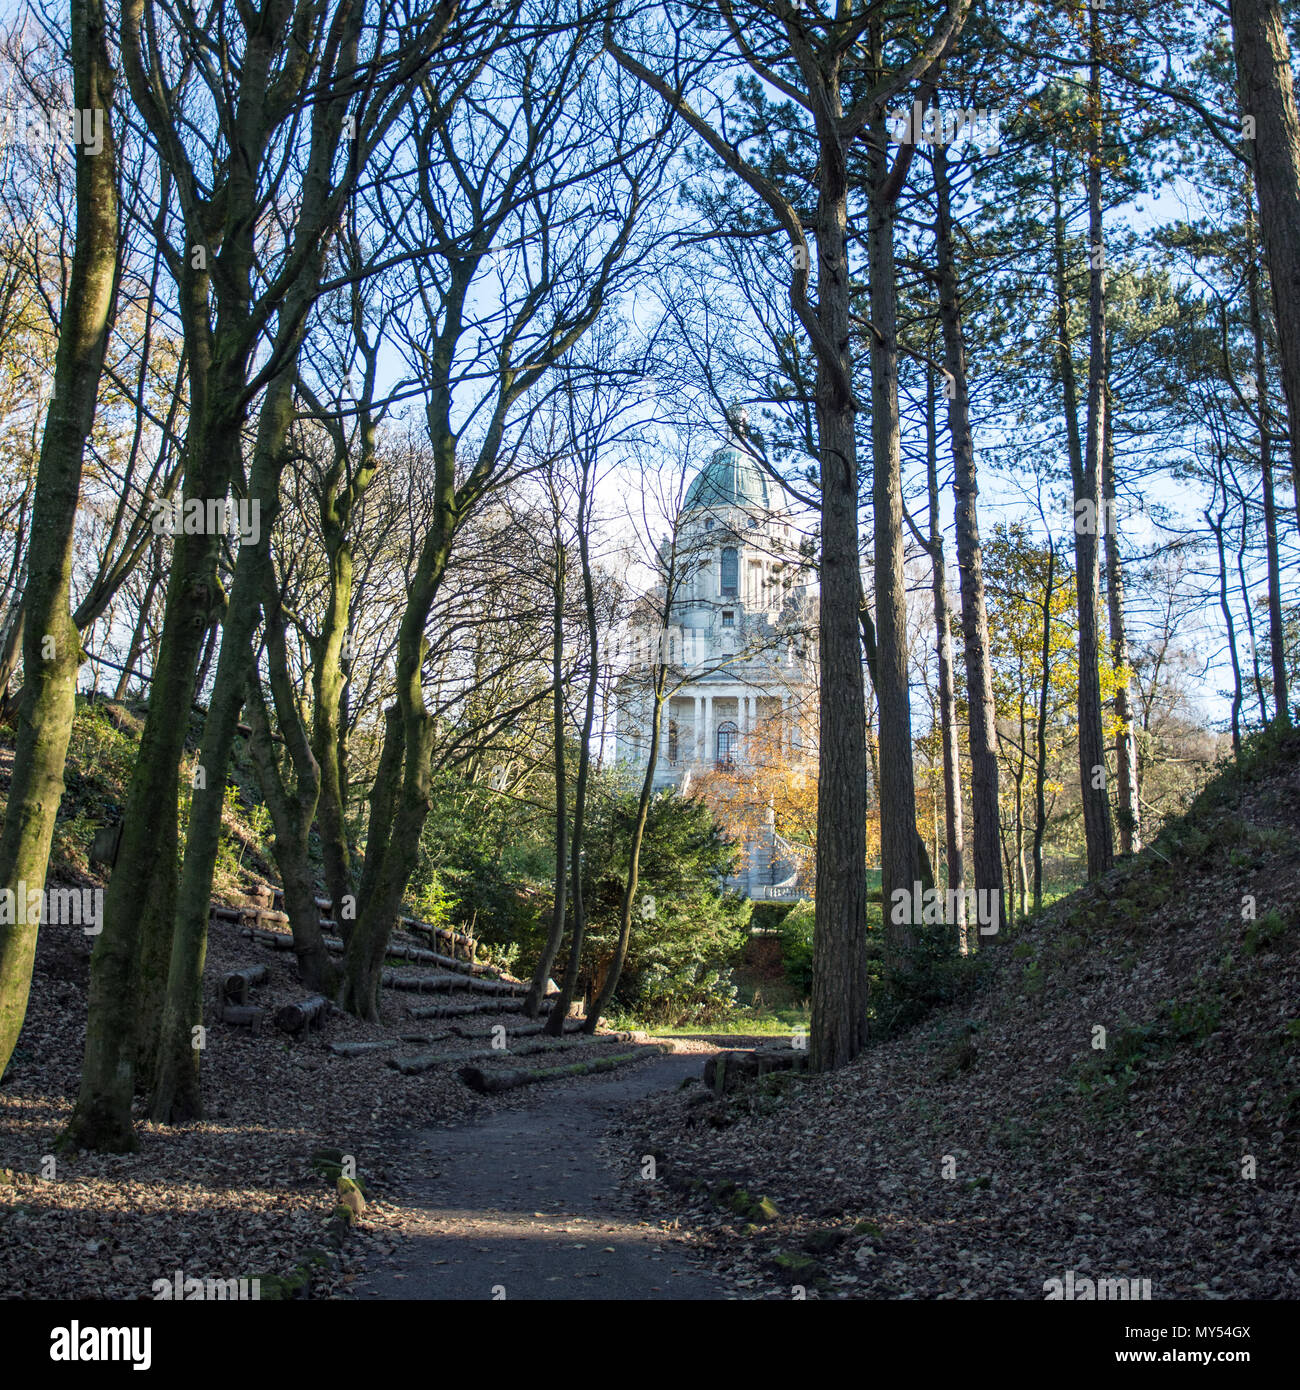 Lancaster, Inglaterra, Reino Unido - 12 de noviembre de 2017: la arquitectura barroca de los Ashton edificio conmemorativo es visible a través de los árboles del parque de Williamson. Foto de stock